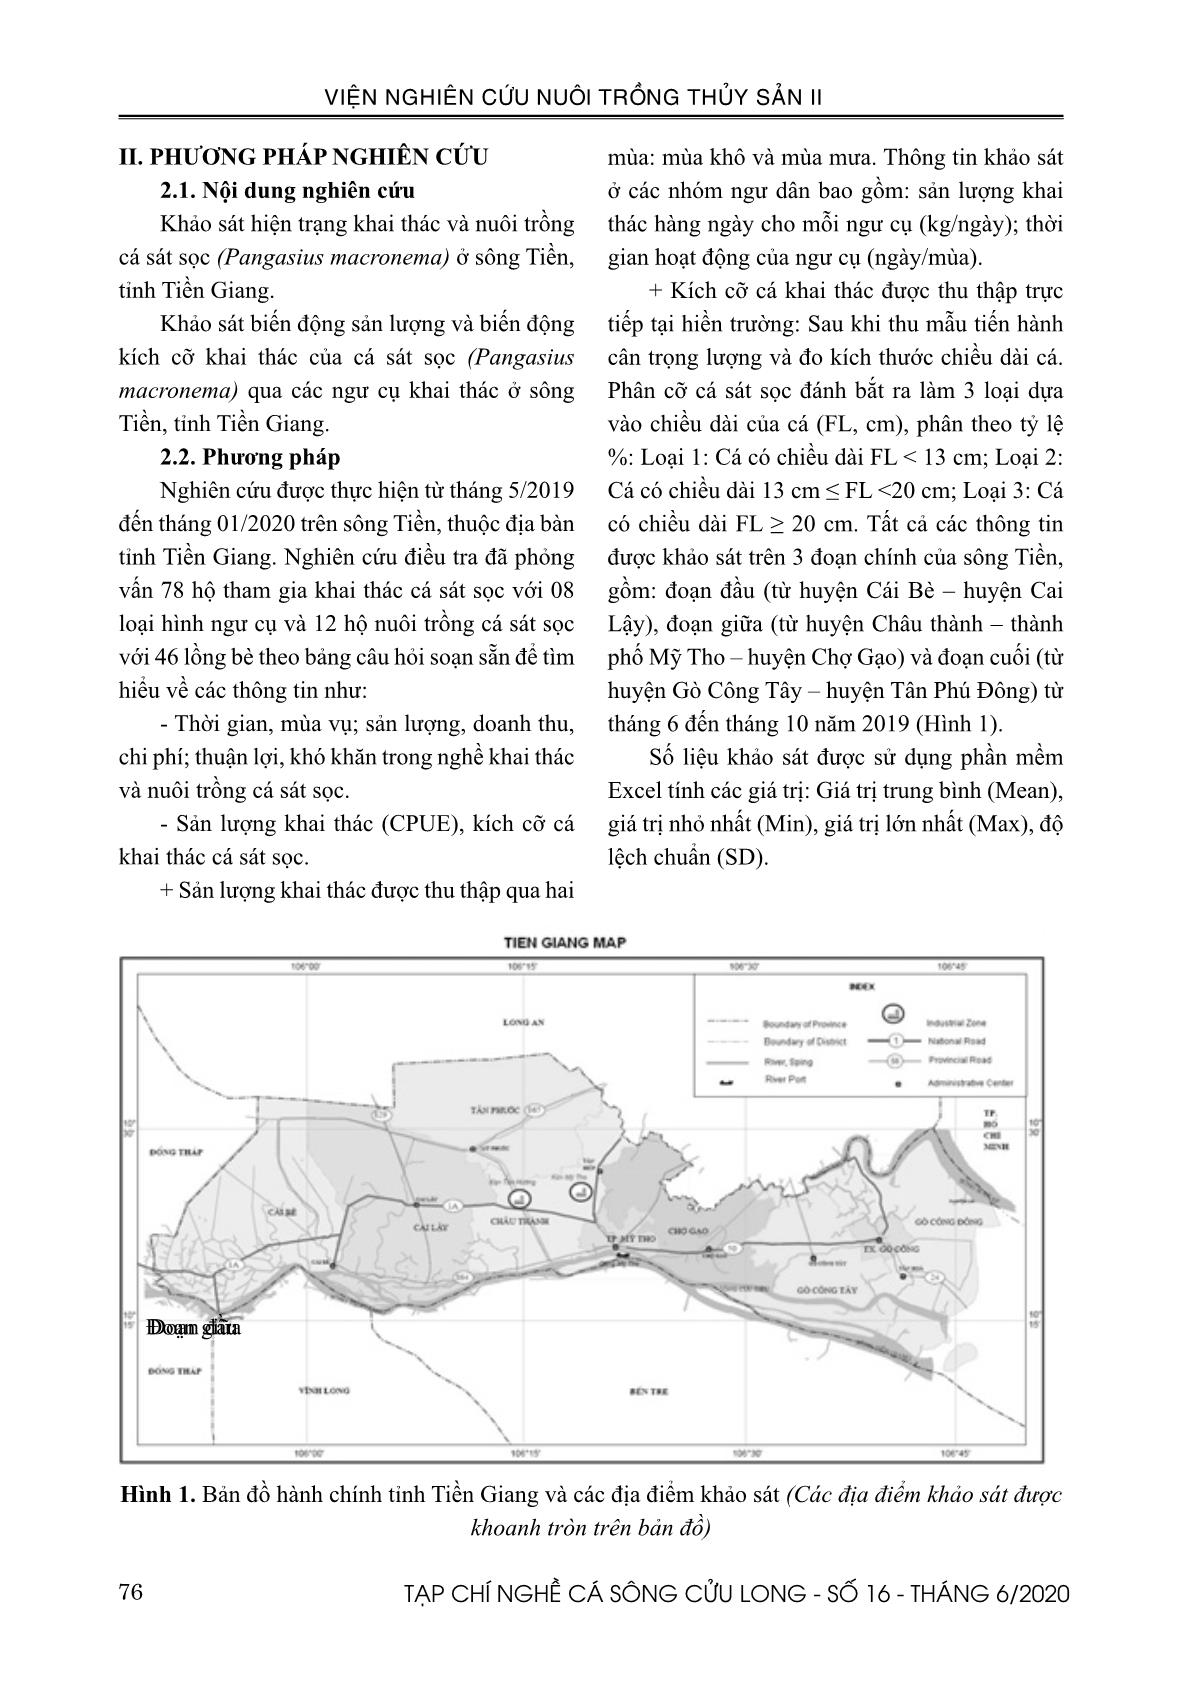 Hiện trạng khai thác và nuôi trồng cá sát sọc Pangasius macronema Bleeker, 1850 ở tỉnh Tiền Giang trang 2